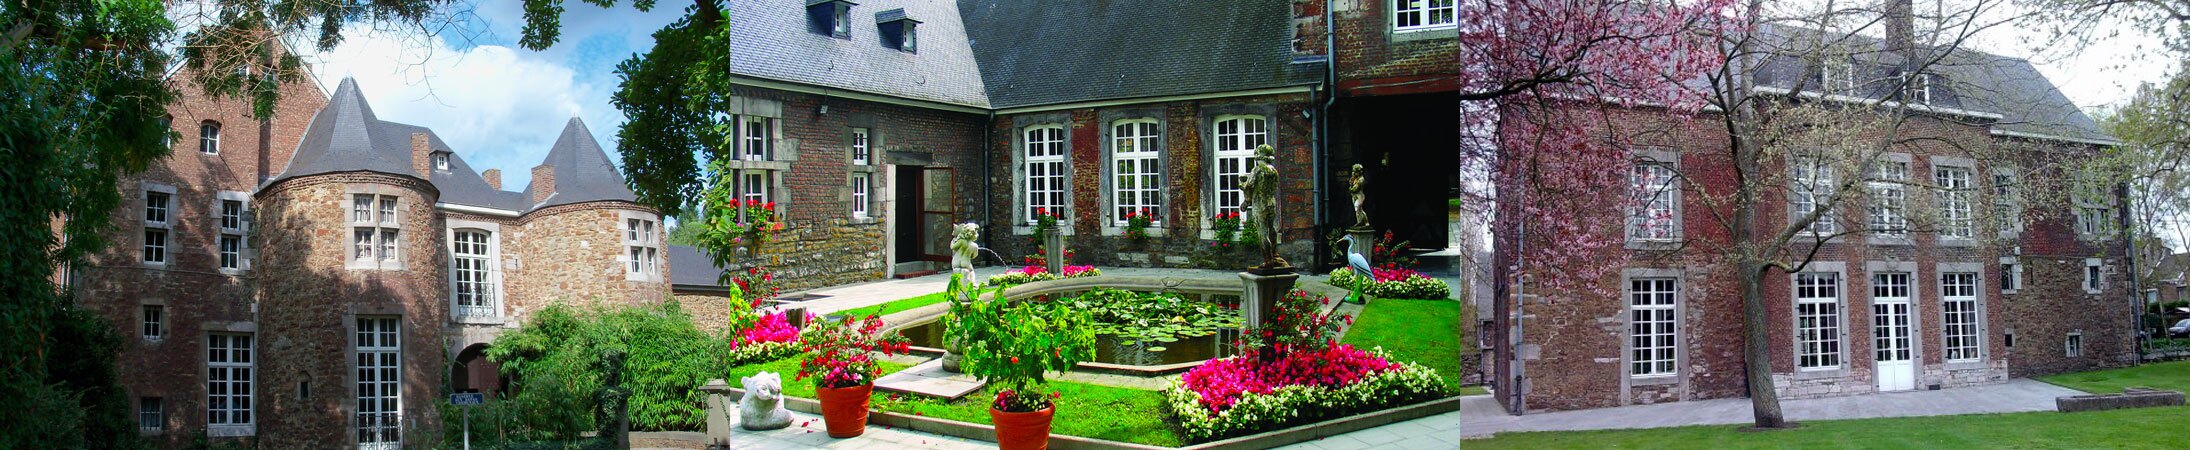 Syndicat d'initiative de Seraing - Tourisme - Les châteaux de Jemeppe - Ordange